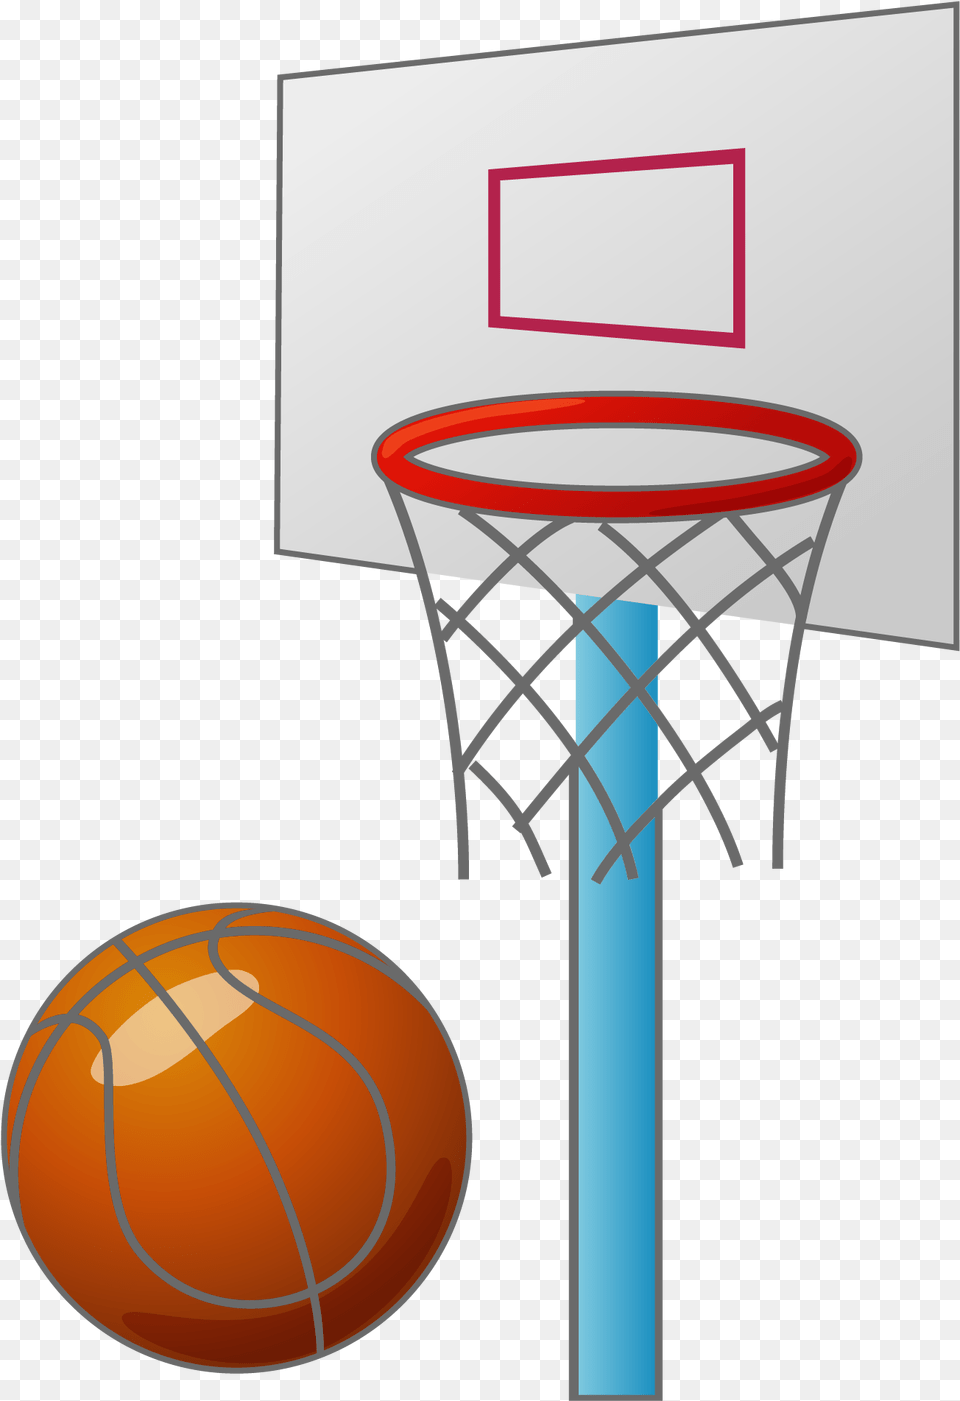 Basketball Backboard Court Basketball Court In Cartoon, Hoop, Ball, Basketball (ball), Sport Free Png Download